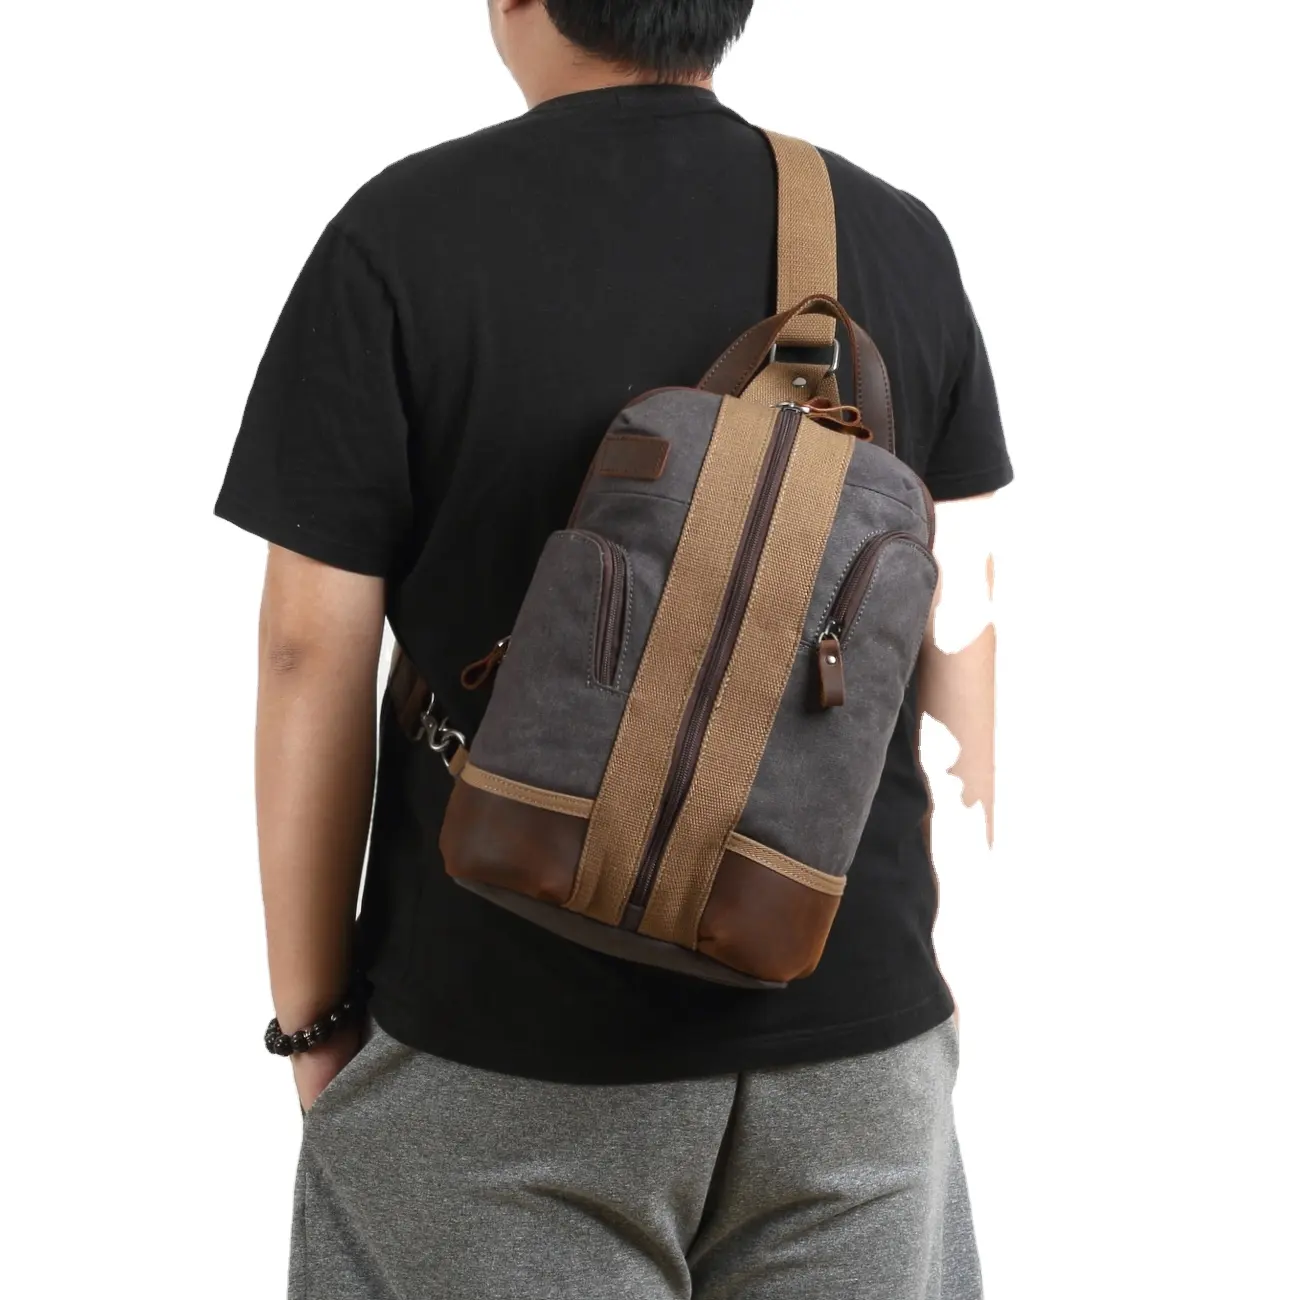 Mochila masculina de couro personalizada, bolsa de ombro feita em couro com alça carteiro e alça carteiro, venda no atacado da china de 2020